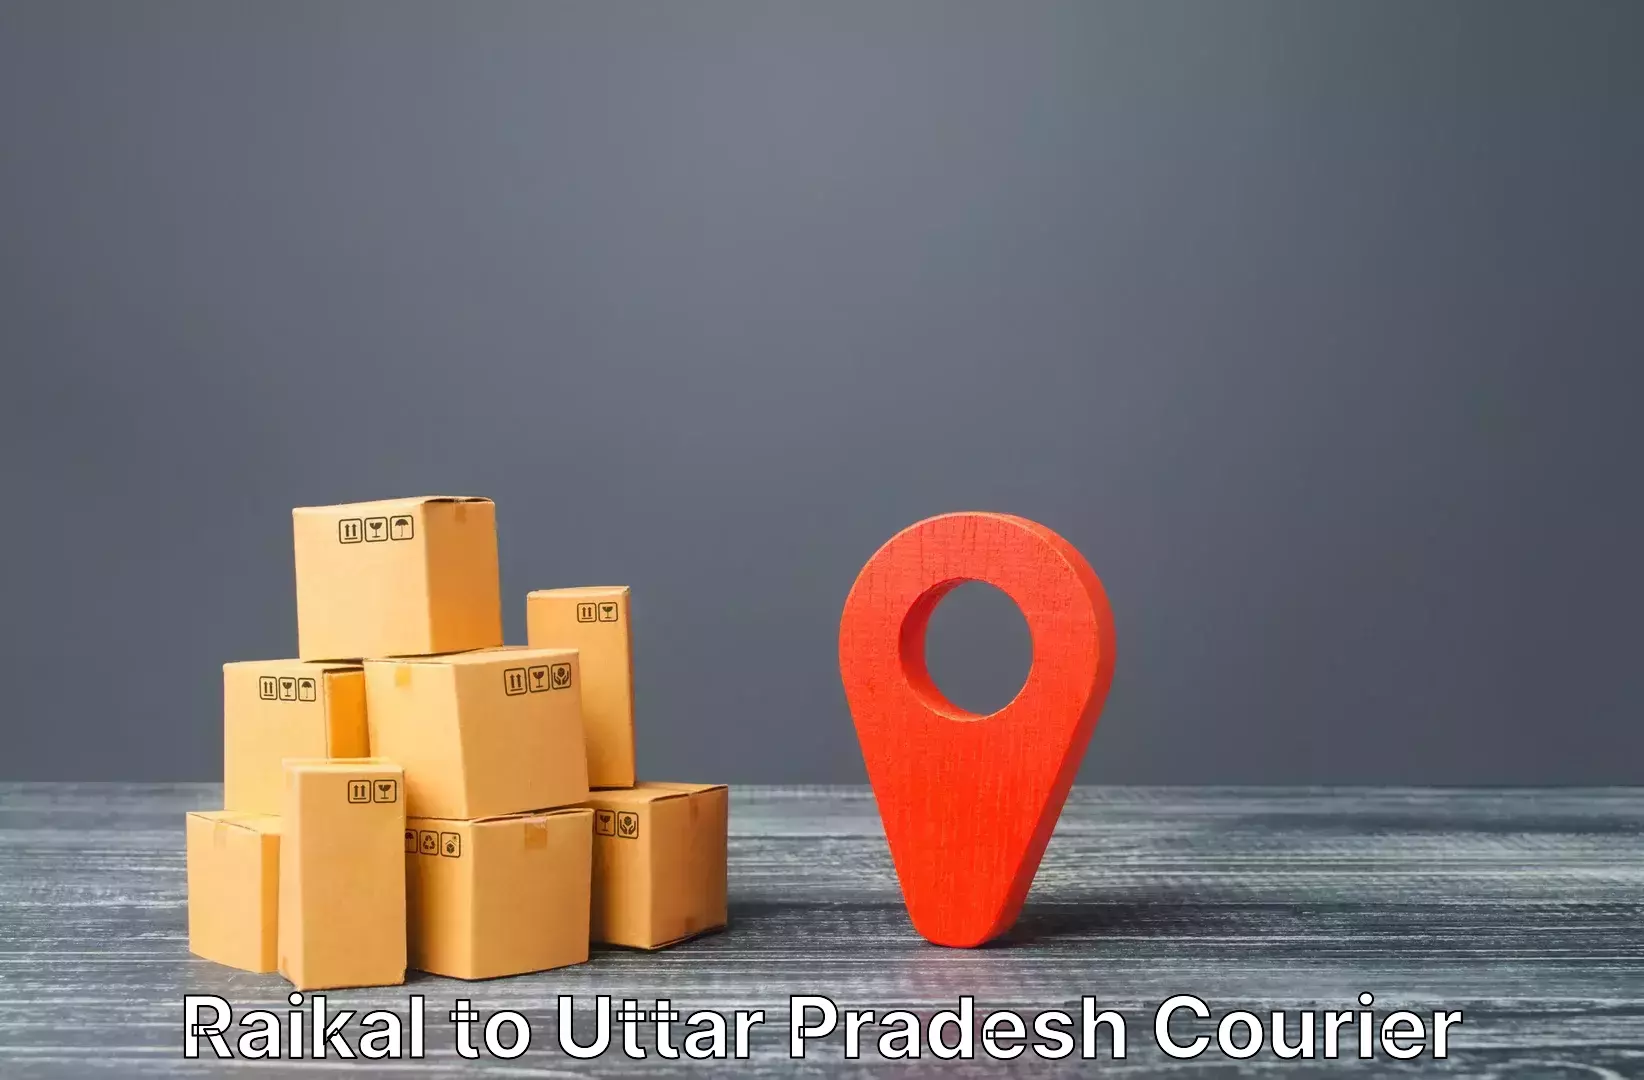 Luggage forwarding service Raikal to Dibai